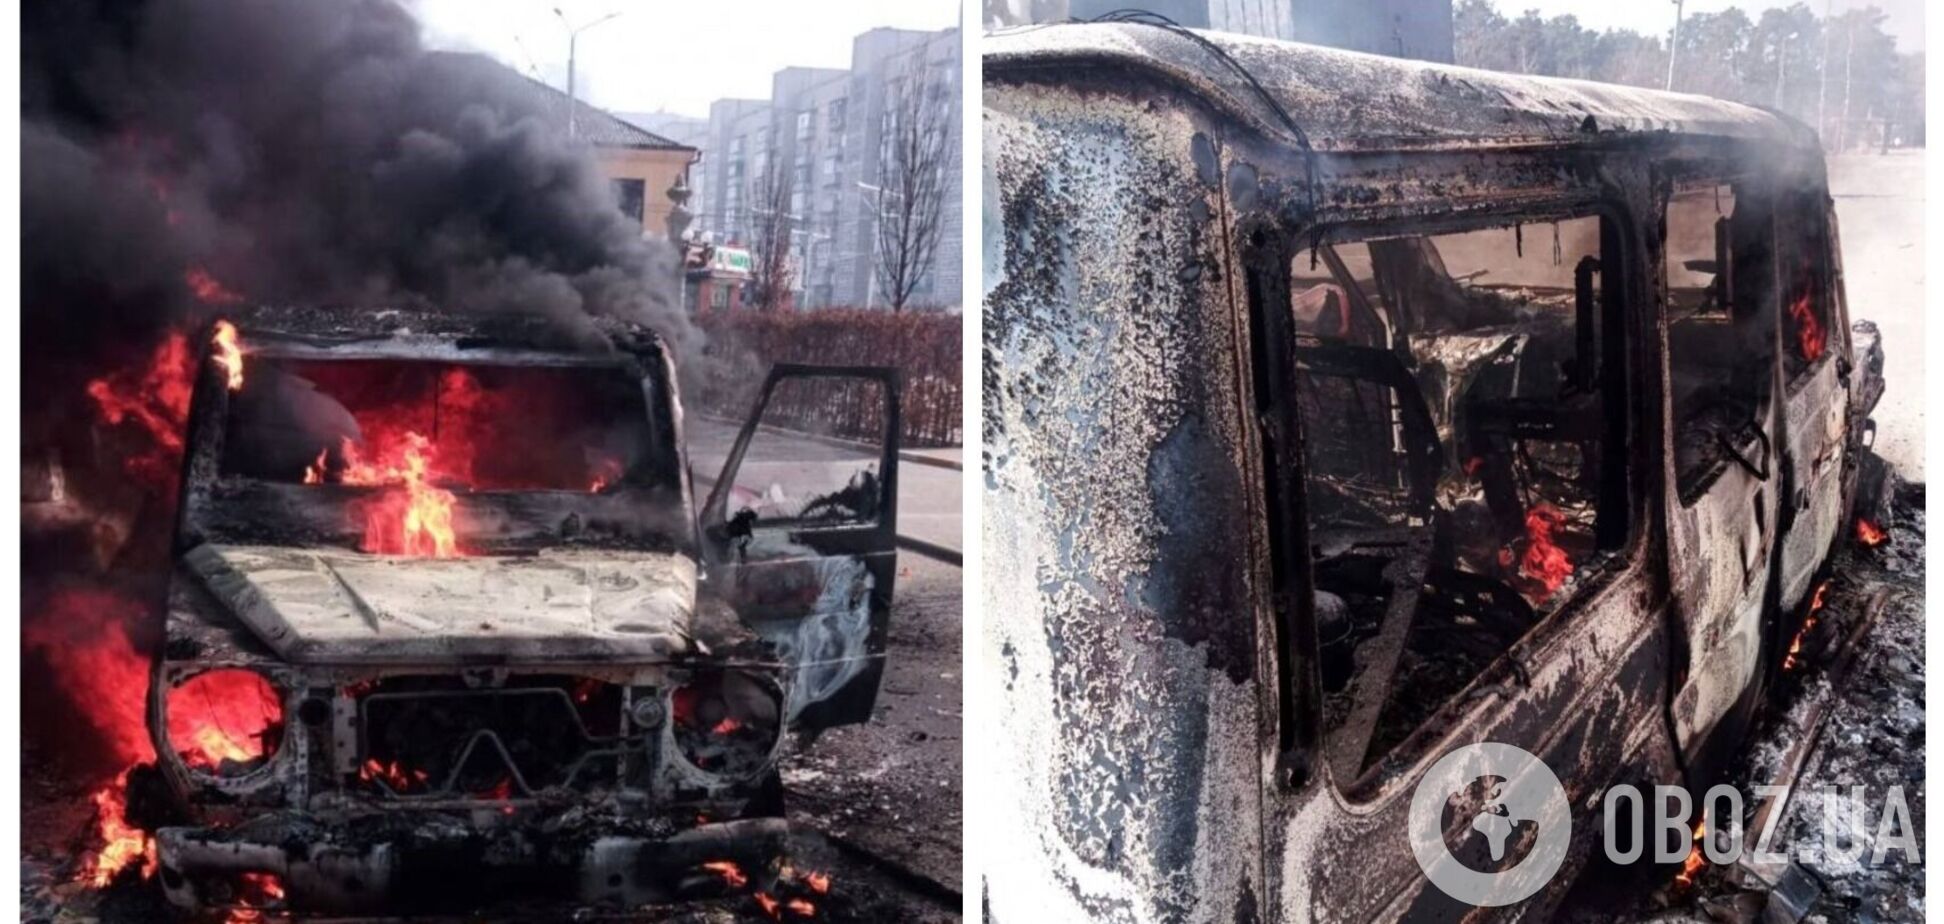 Броньоване авто кримінального авторитета за $500 тис. передали захисникам України: воно врятувало 4 життя. Фото